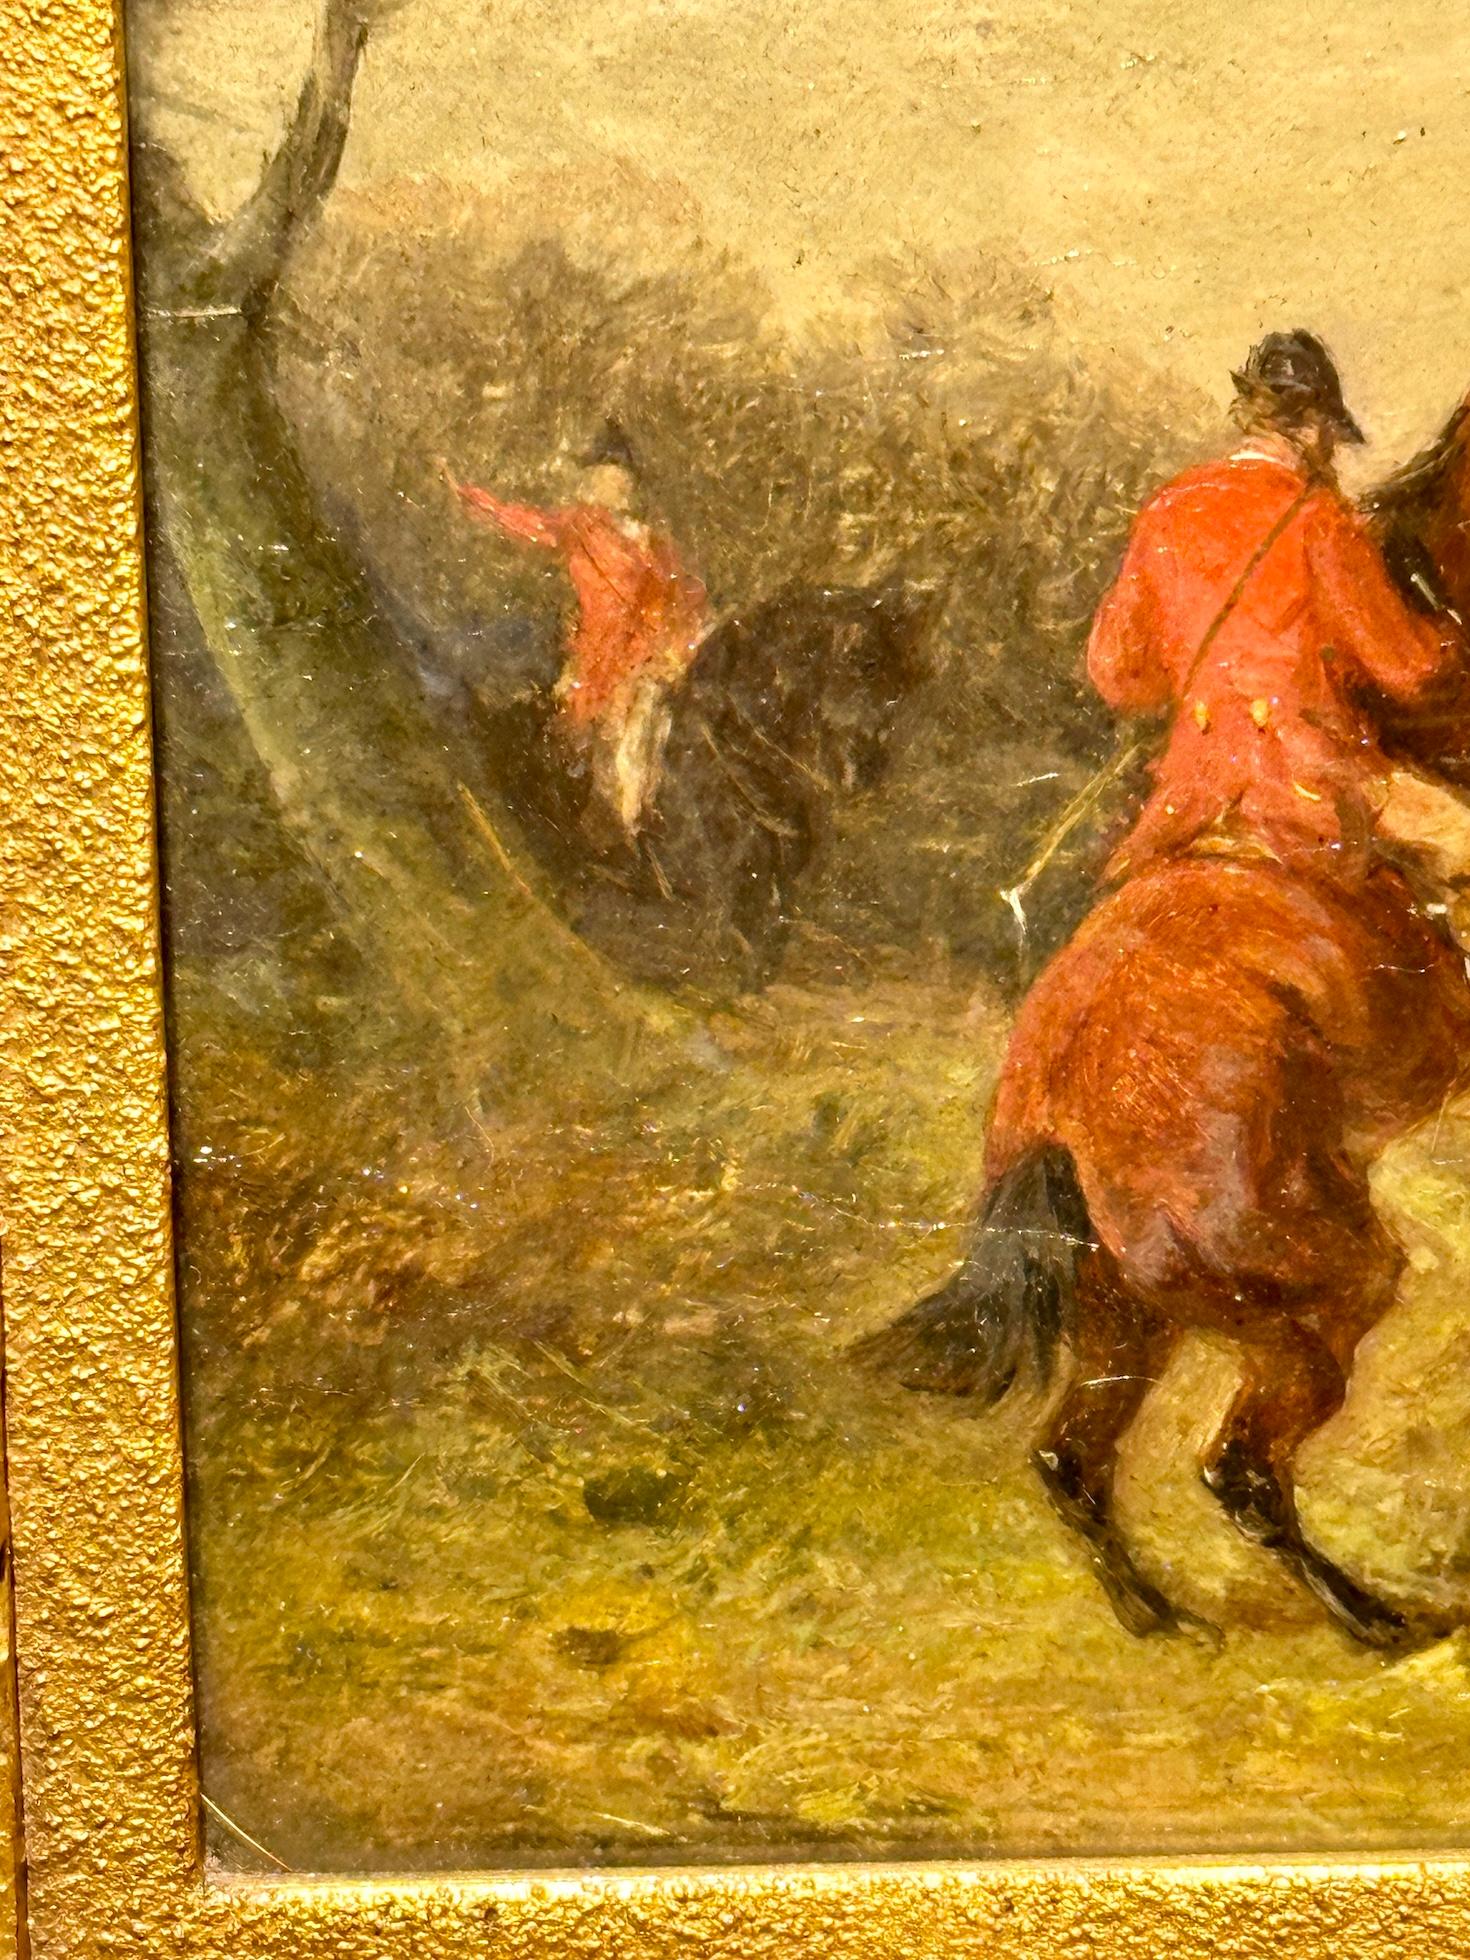 William Joseph Shayer

Englischer Sportmaler aus dem 19. Jahrhundert. Er malte meist in kleinem Maßstab mit großer Detailtreue und Qualität. 

Der Sohn von William Shayer senior muss gut von seinem Vater gelernt haben, denn er hatte eine